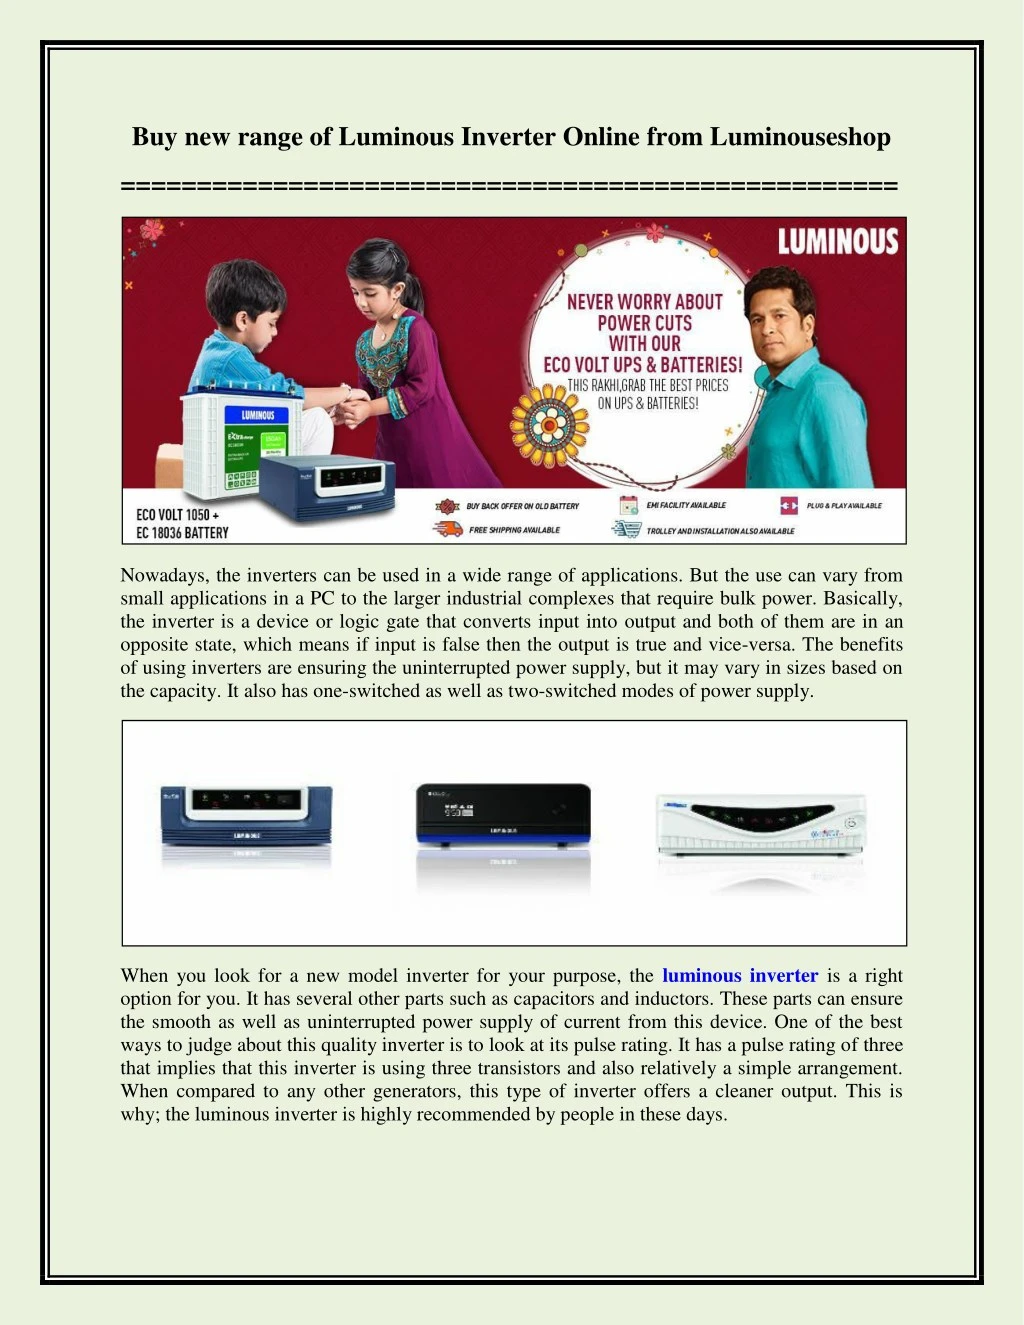 buy new range of luminous inverter online from